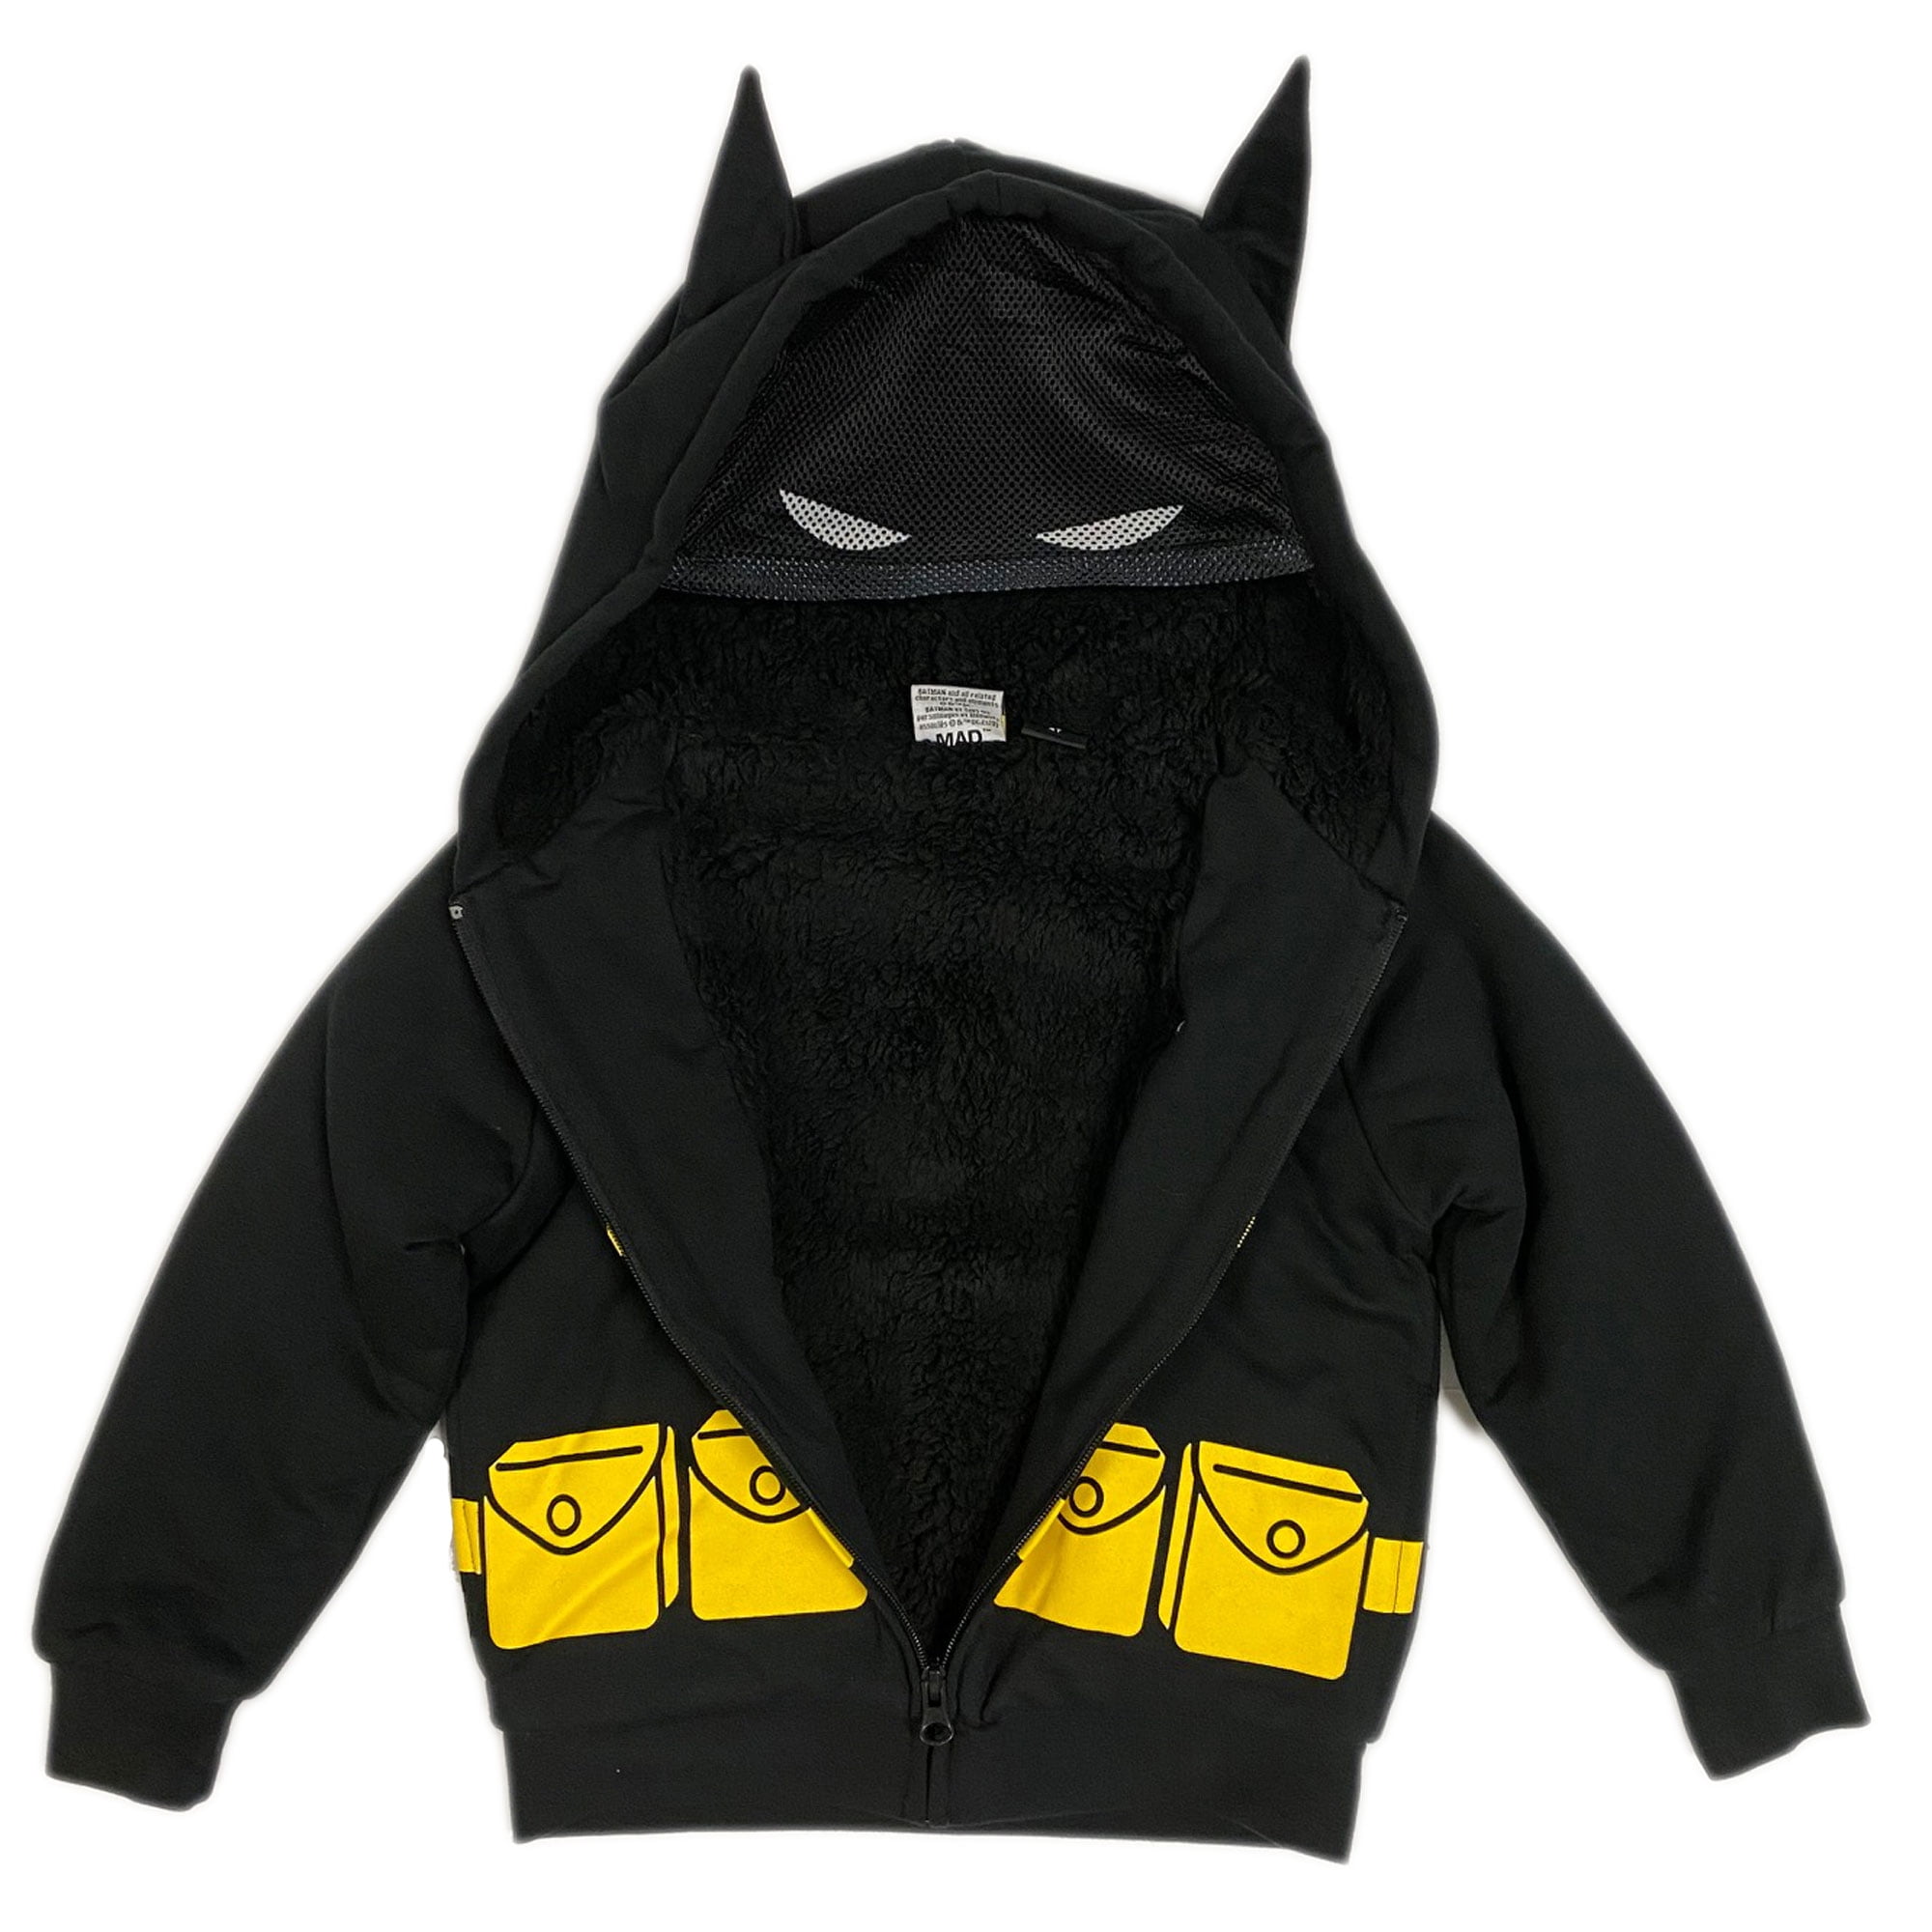 Batman Little Boys Full Zip Hooded Jacket gray color size 4t,5t,7t 